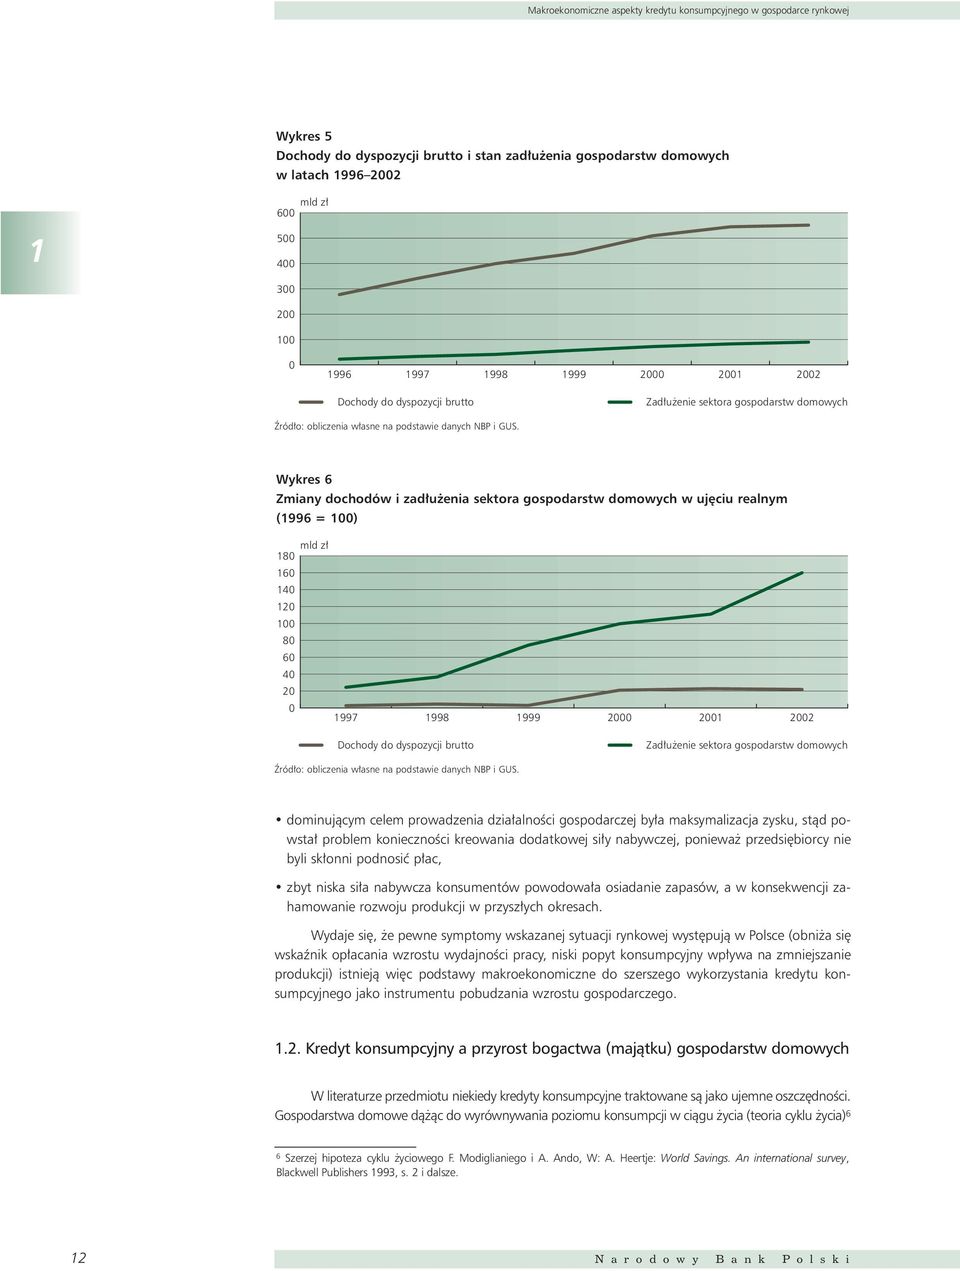 Wykres 6 Zmiany dochodów i zad u enia sektora gospodarstw domowych w uj ciu realnym (1996 = 1) mld z 18 16 14 12 1 8 6 4 2 1997 1998  dominujàcym celem prowadzenia dzia alnoêci gospodarczej by a